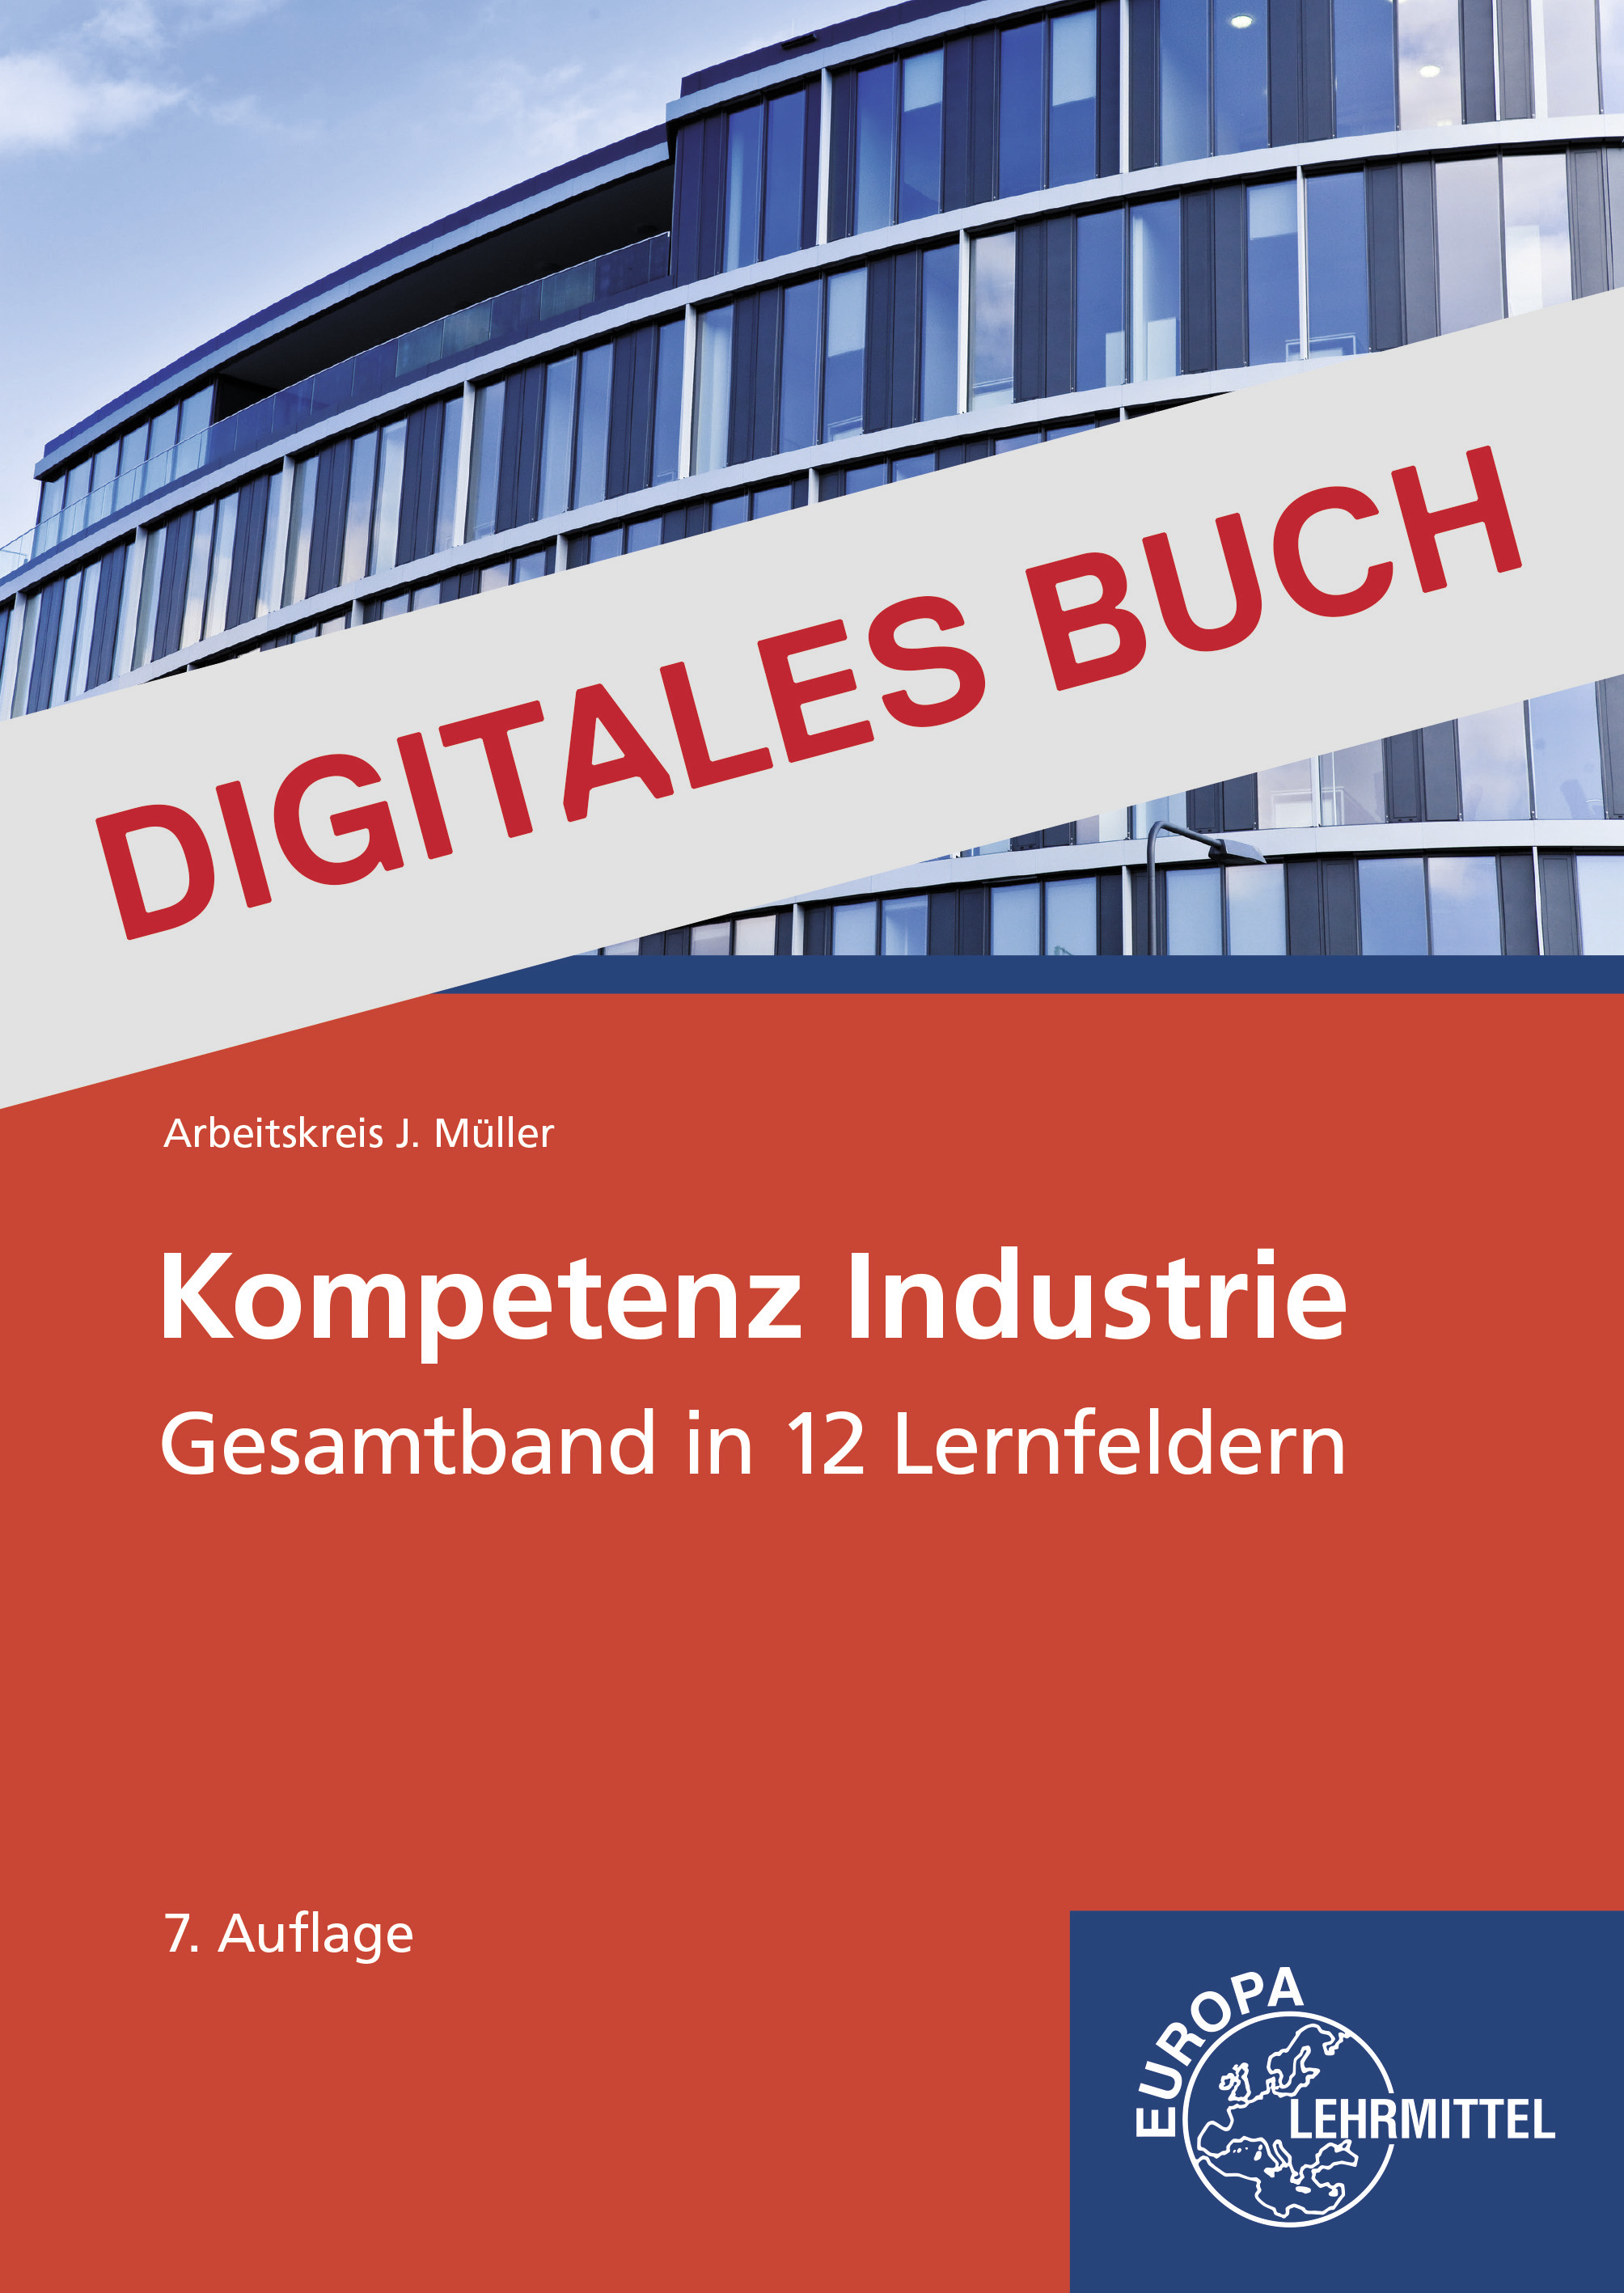 Kompetenz Industrie in 12 Lernfeldern - Digitales Buch